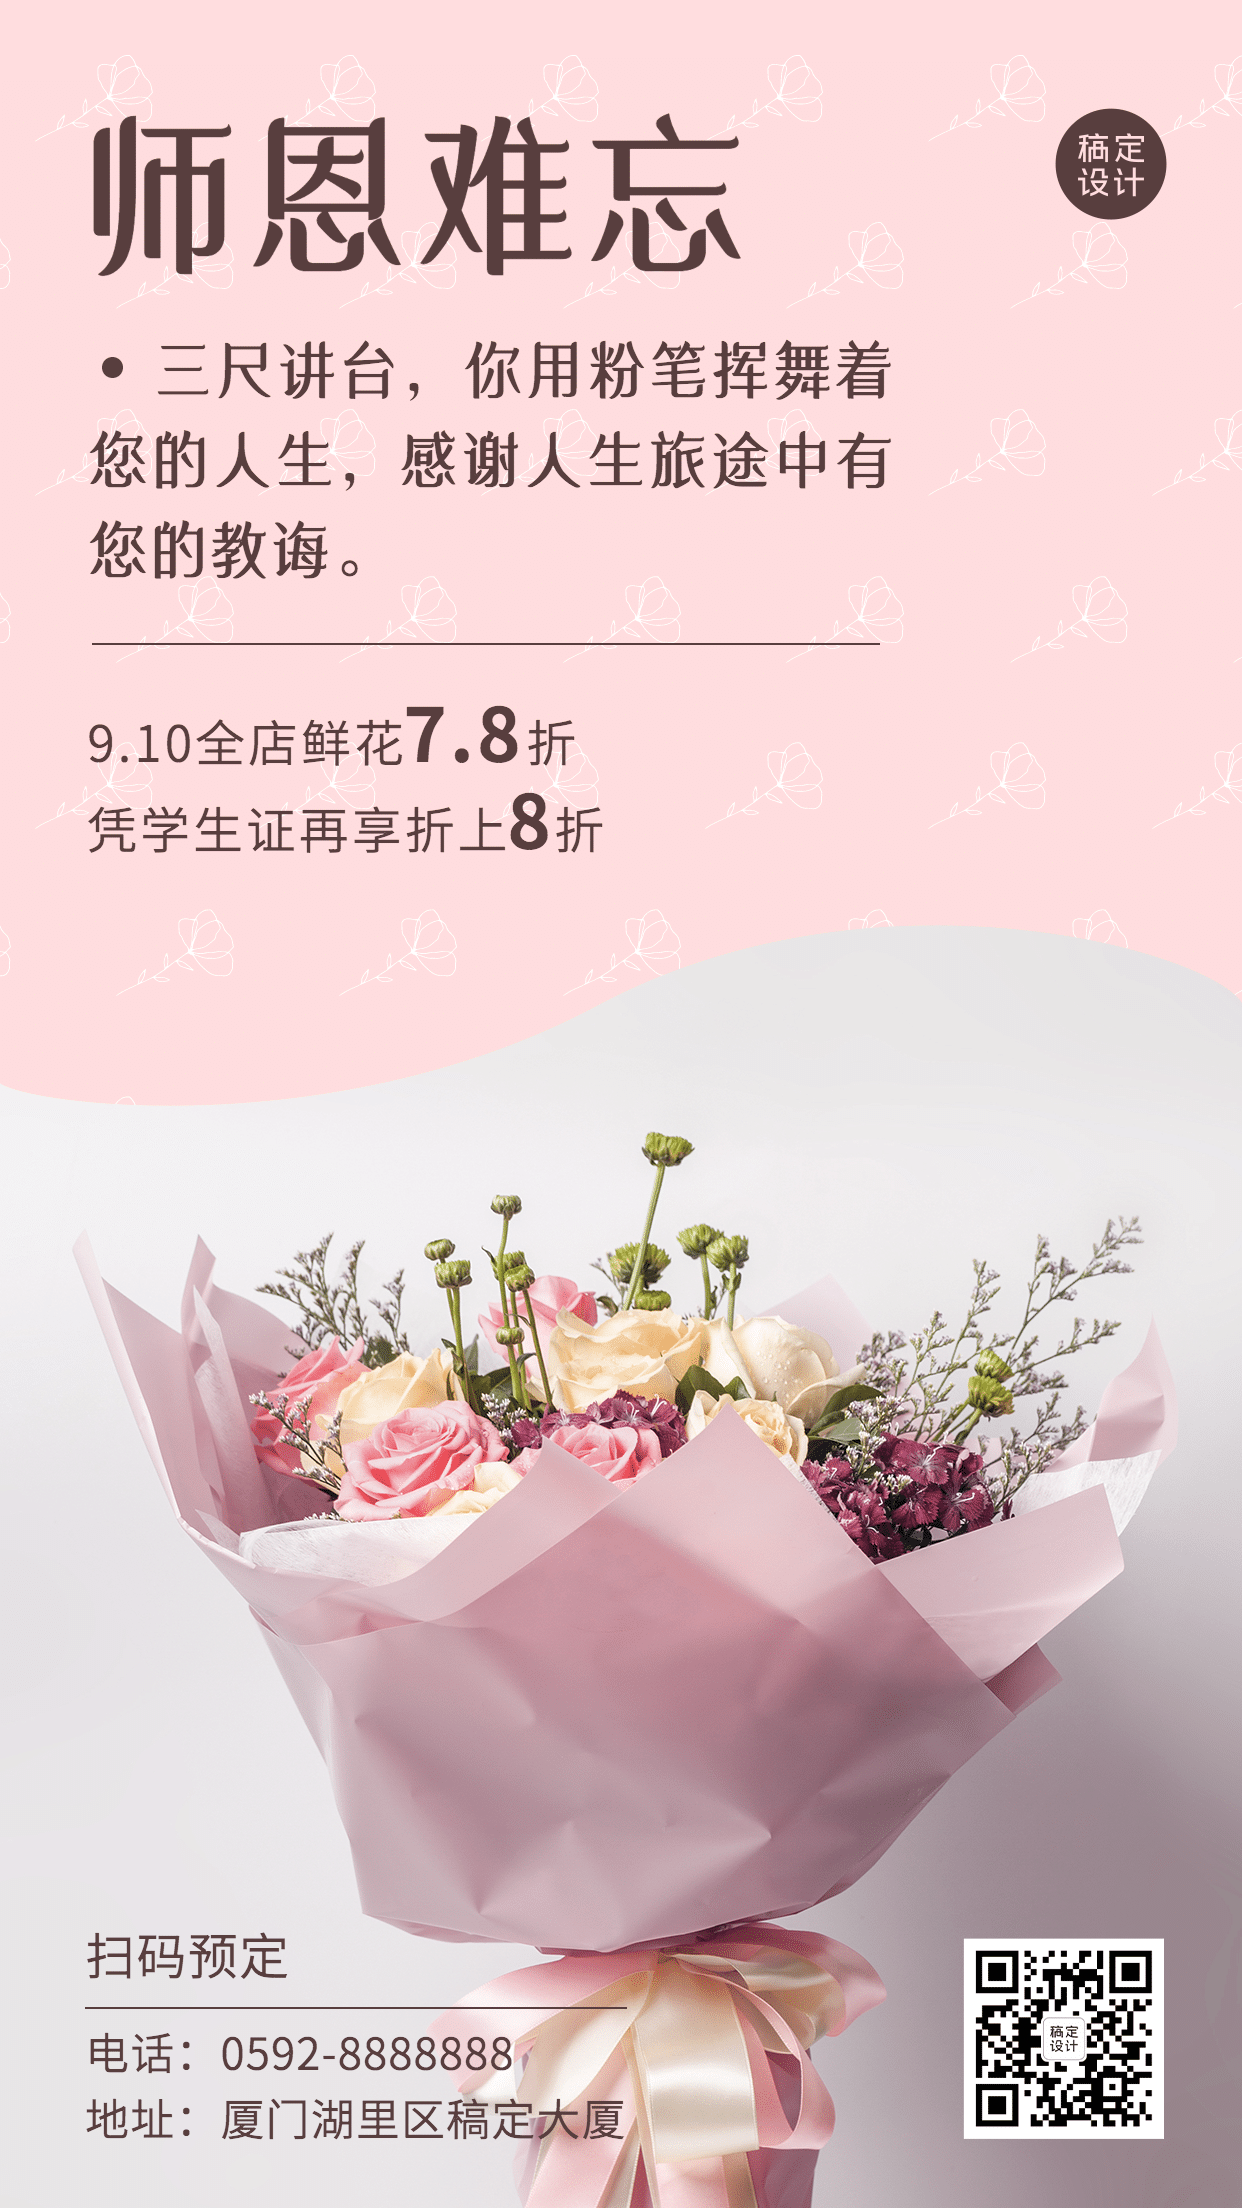 教师节鲜花献礼产品展示手机海报预览效果